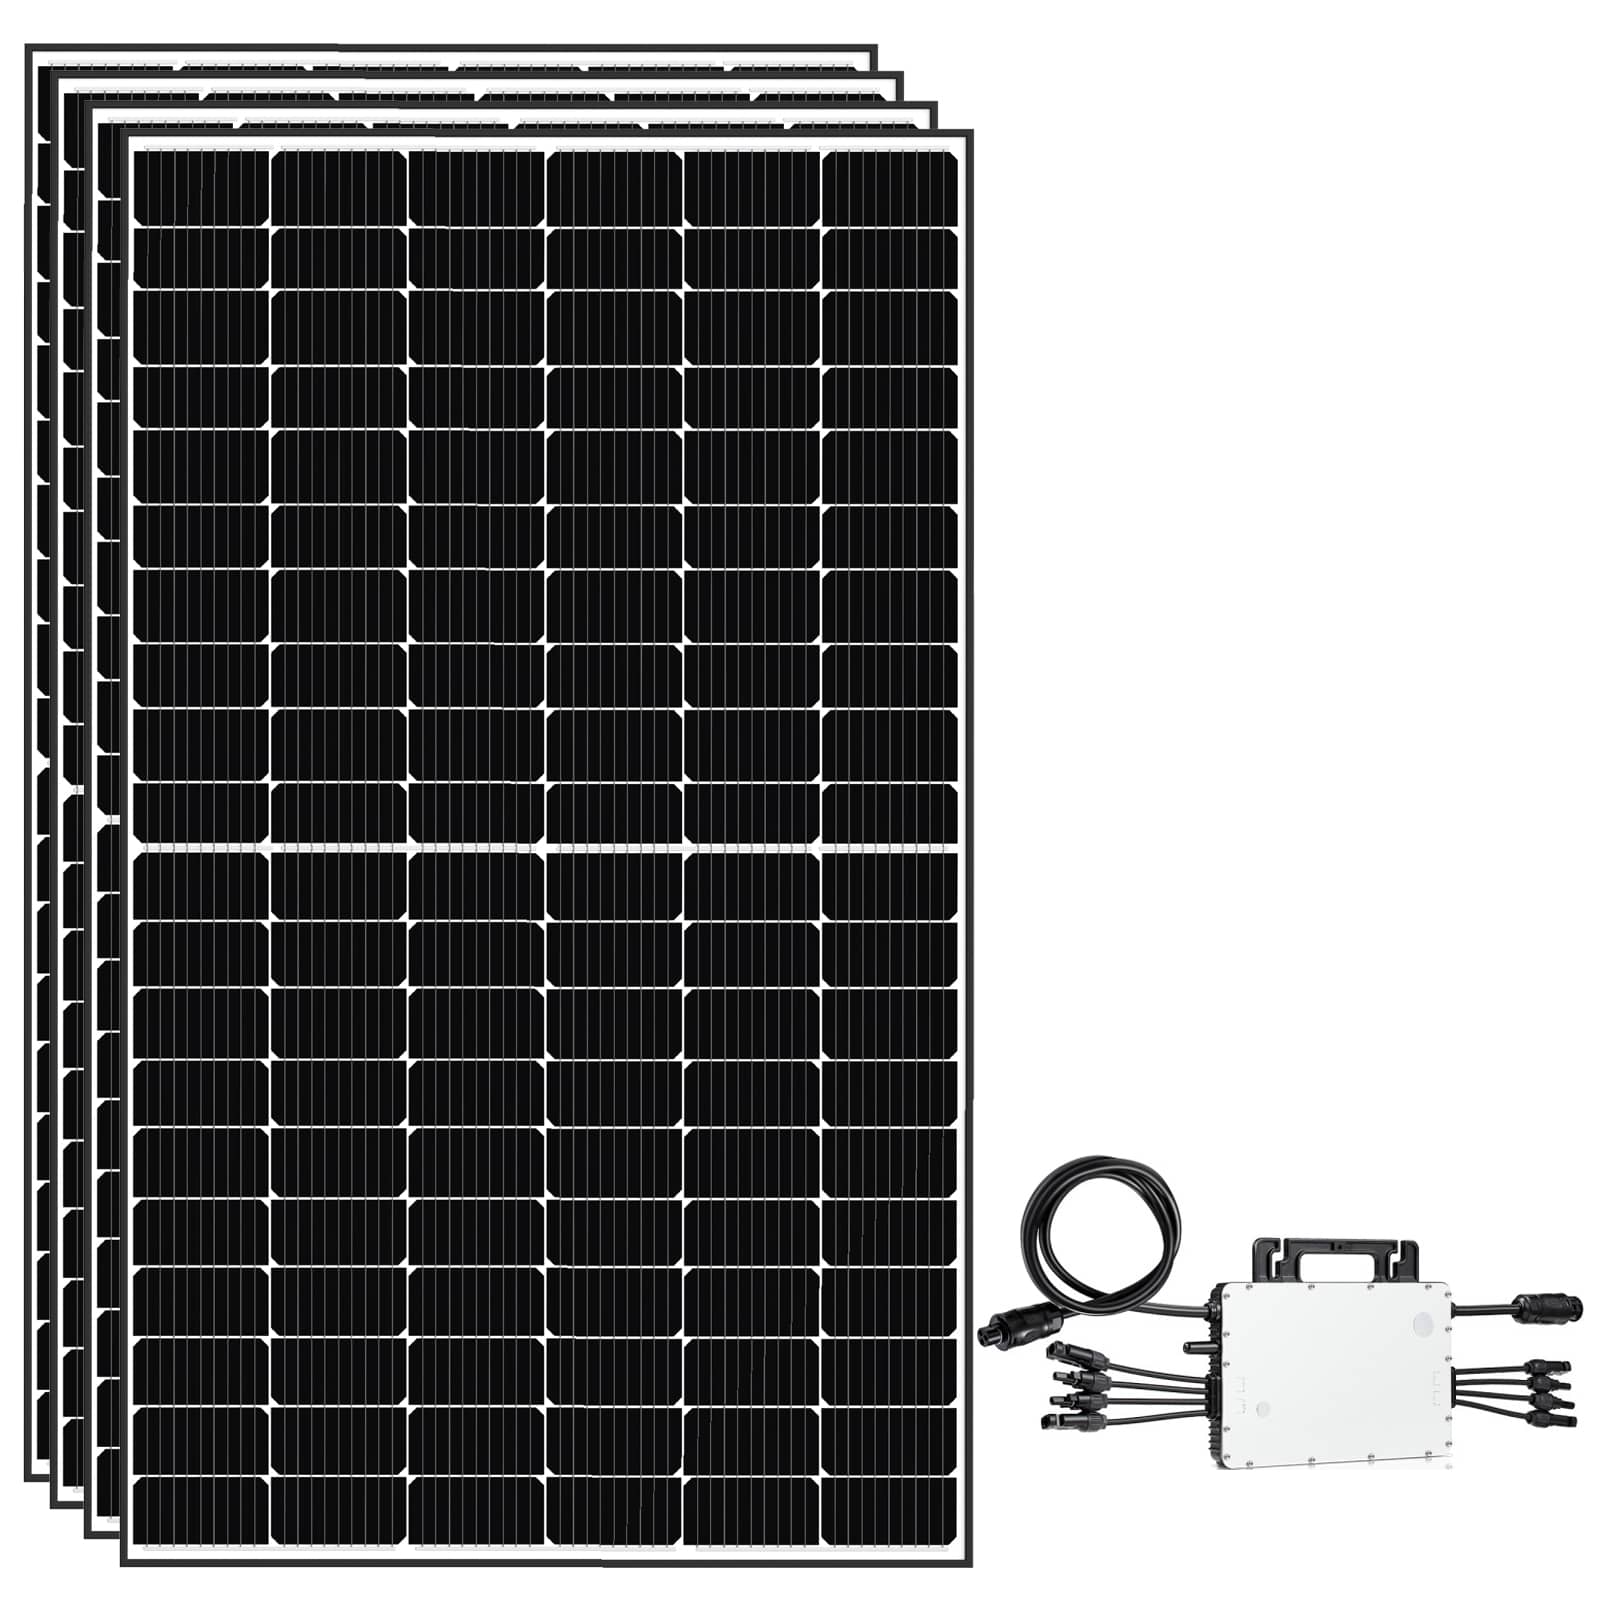 Solar- Pv 1640W Balkonkraftwerke Komplettset- Mit EPP 410W Solarmodule und Hoymiles 1500 mikrowechselrichter